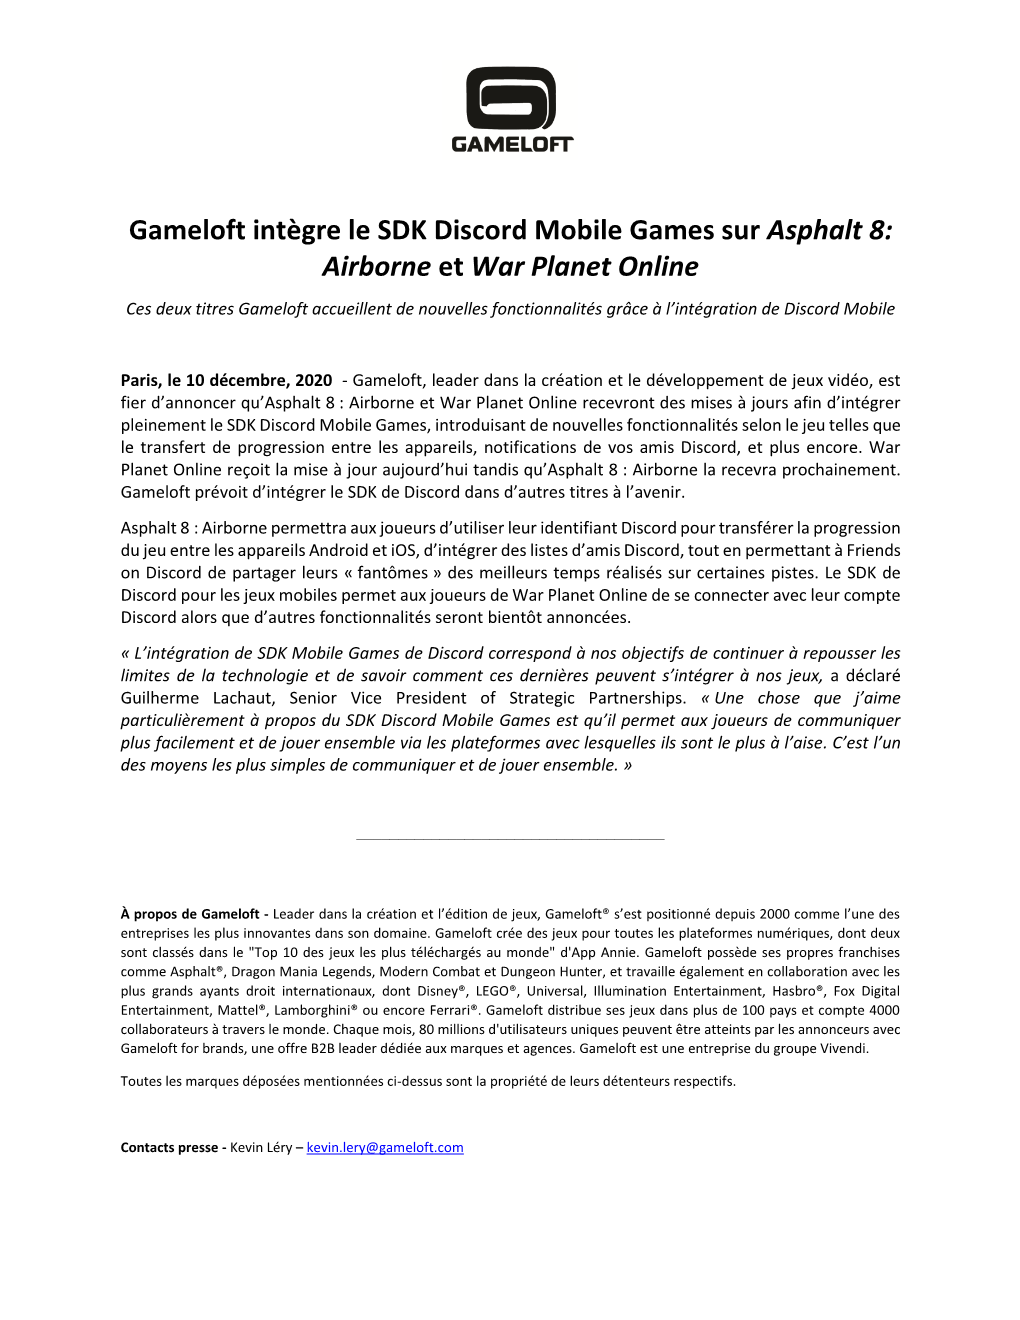 Gameloft Intègre Le SDK Discord Mobile Games Sur Asphalt 8: Airborne Et War Planet Online